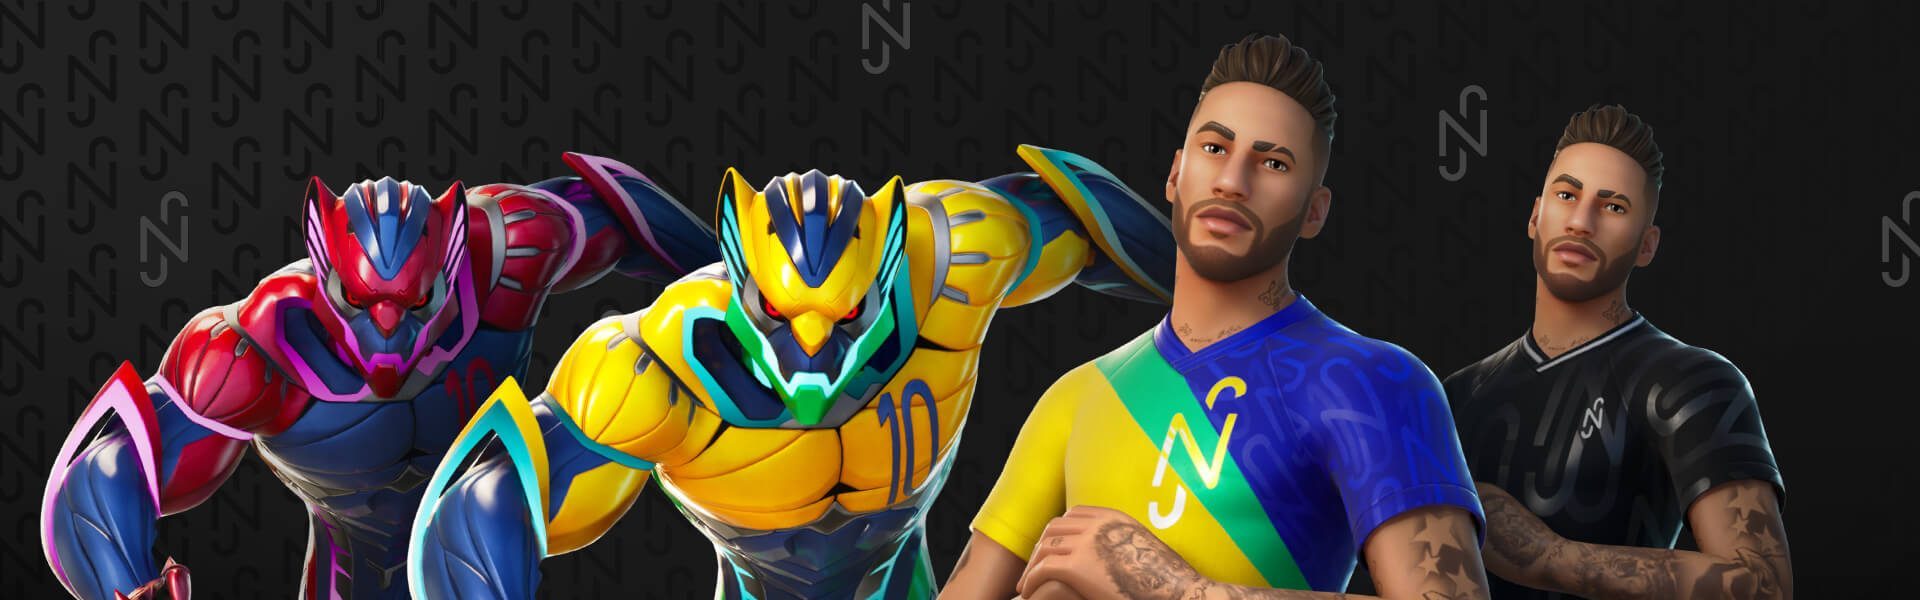 Neymar Jr. chega ao Fortnite com novas skins personalizadas e diversos  desafios relacionados ao futebol - eSports - SAPO Desporto